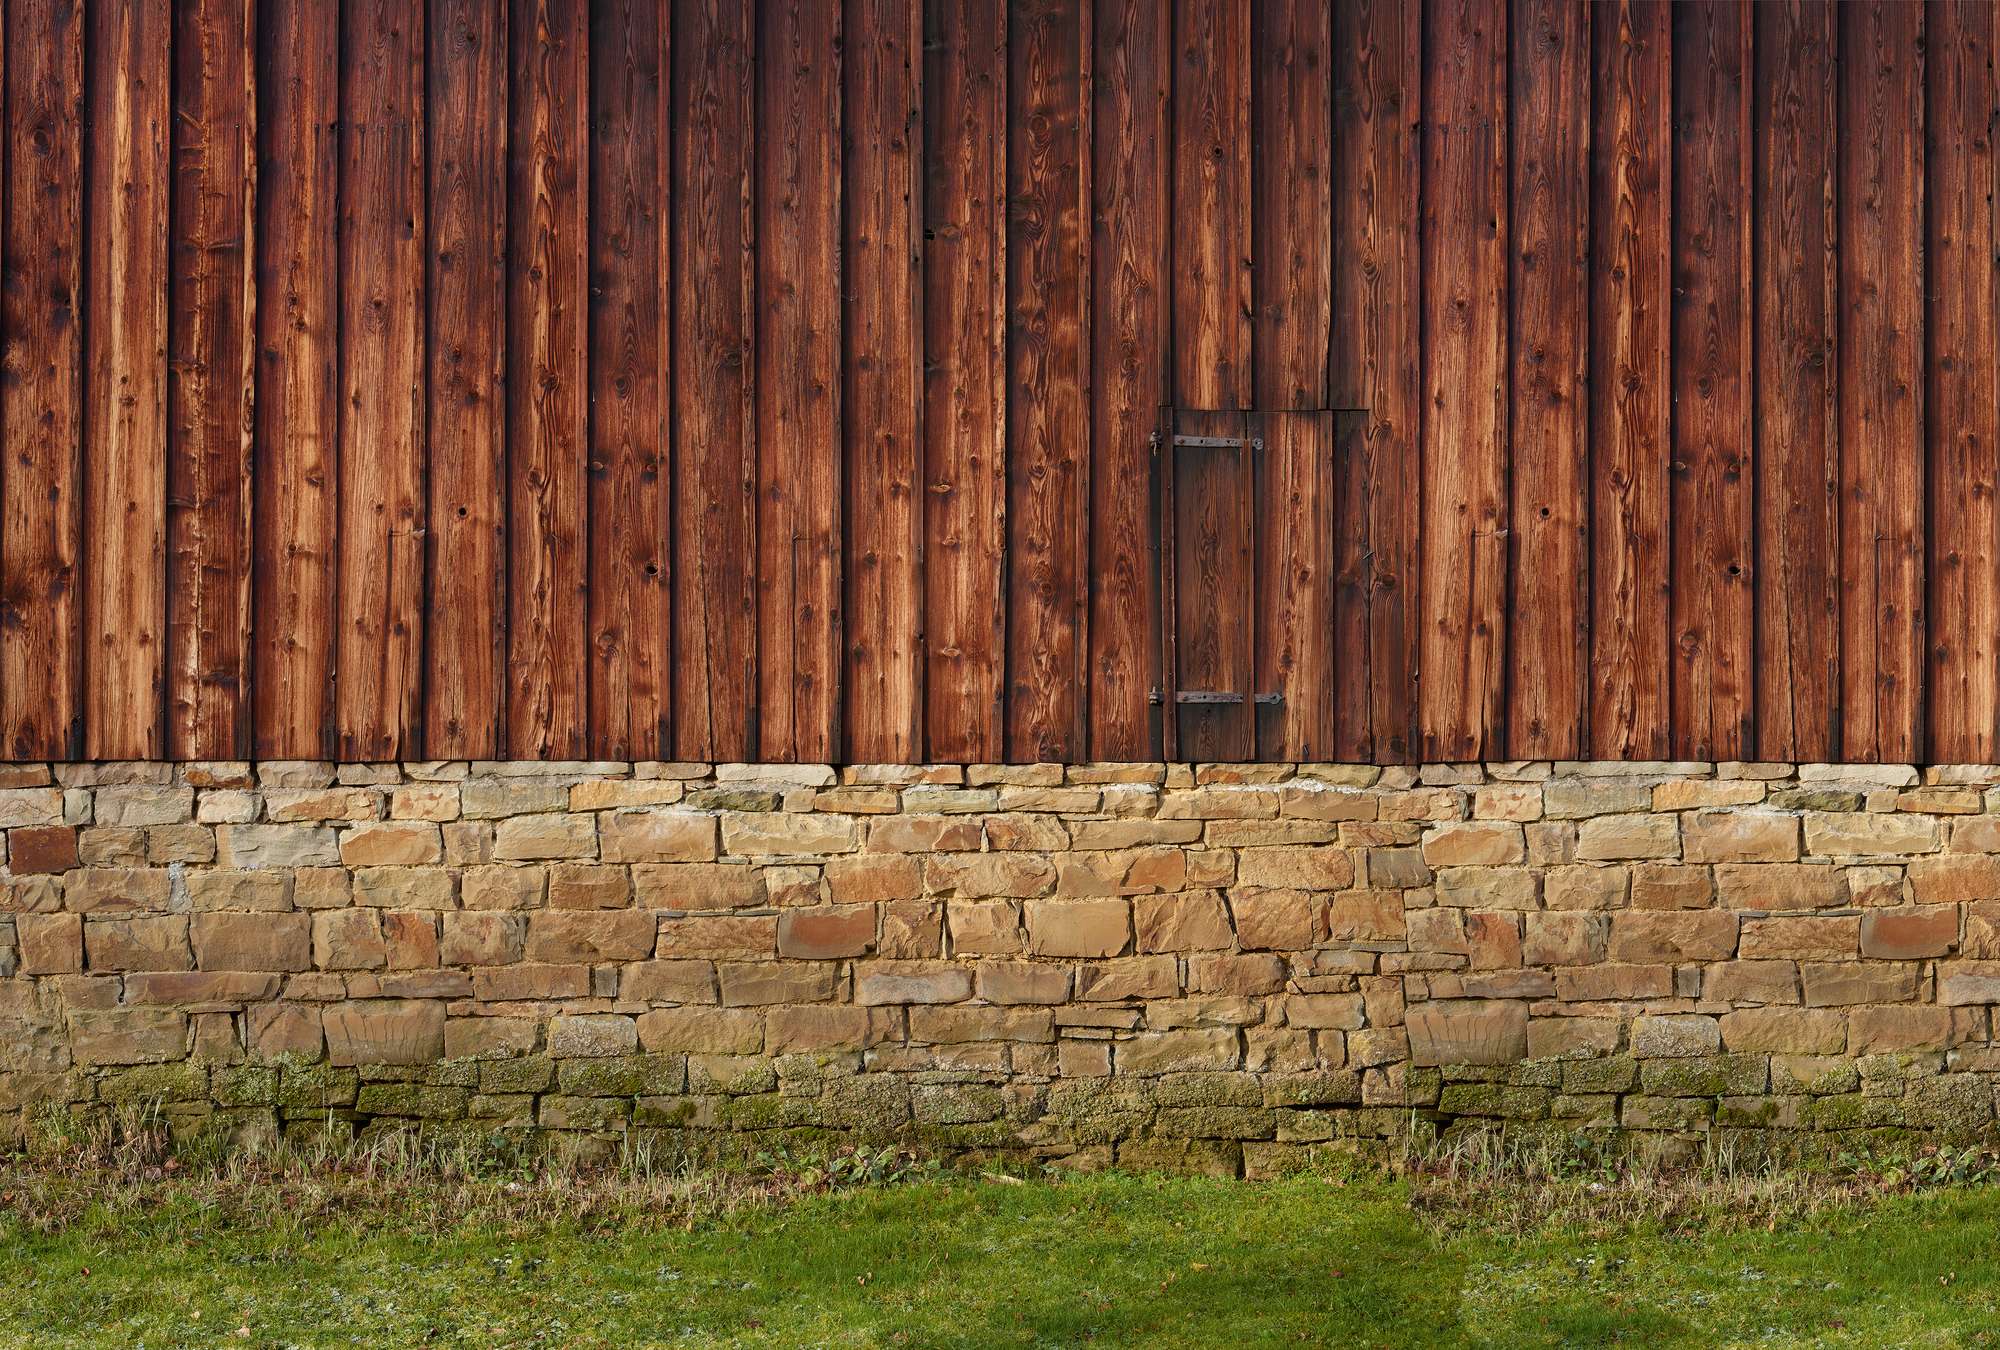             Papel pintado con fachada de madera y pared de piedra natural
        